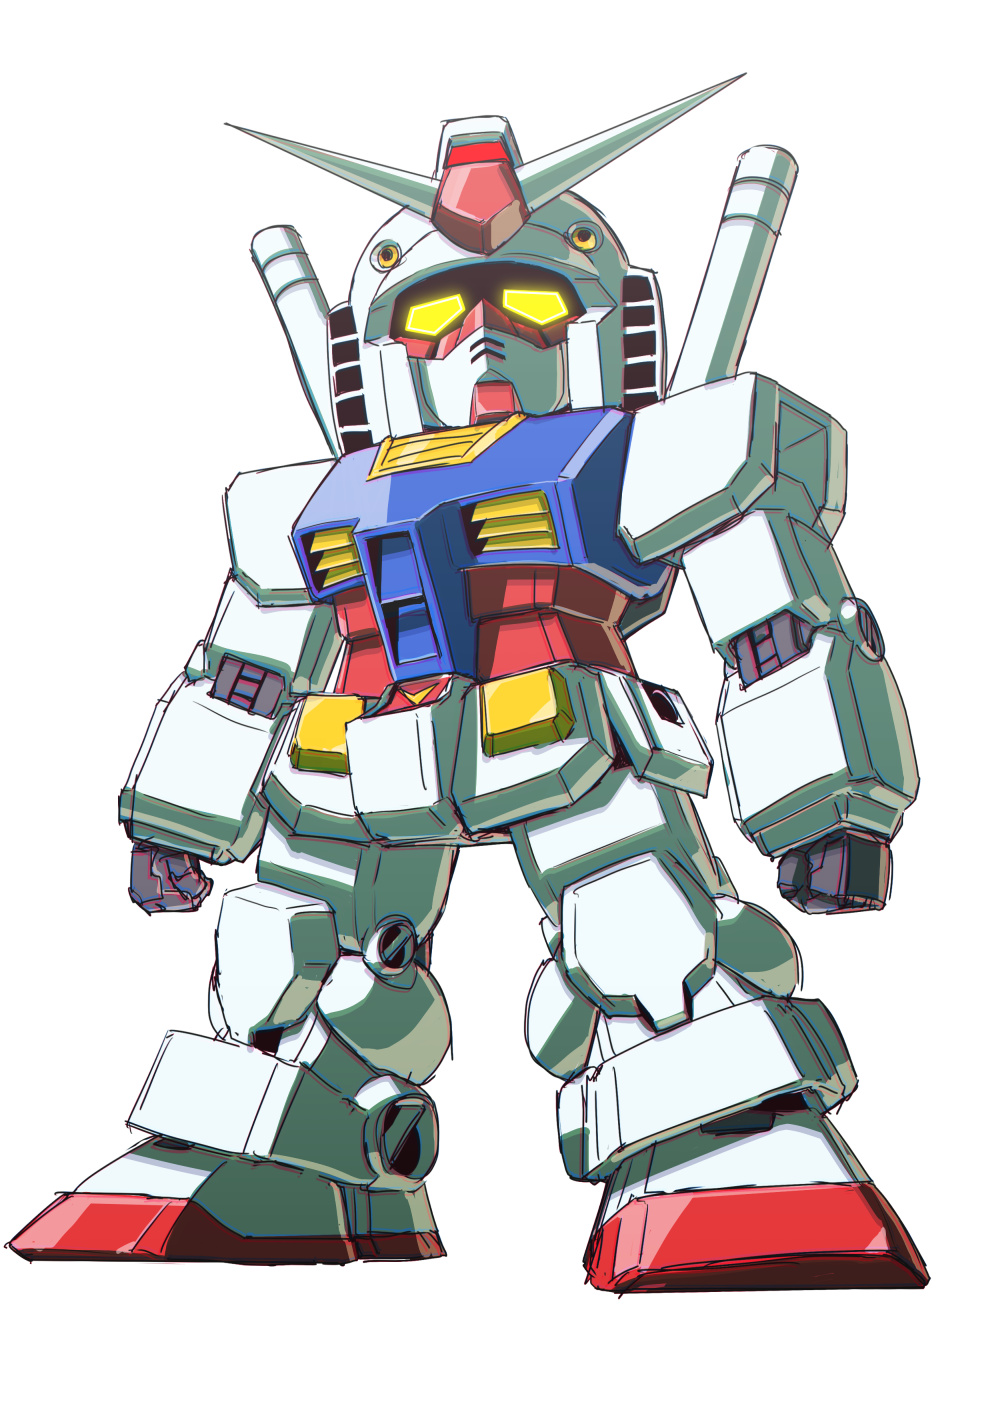 RX 78 Gundam Mobile Suit Gundam Anime Mechs Gundam Super Robot Taisen Artwork Digital Art Fan Art 1003x1417